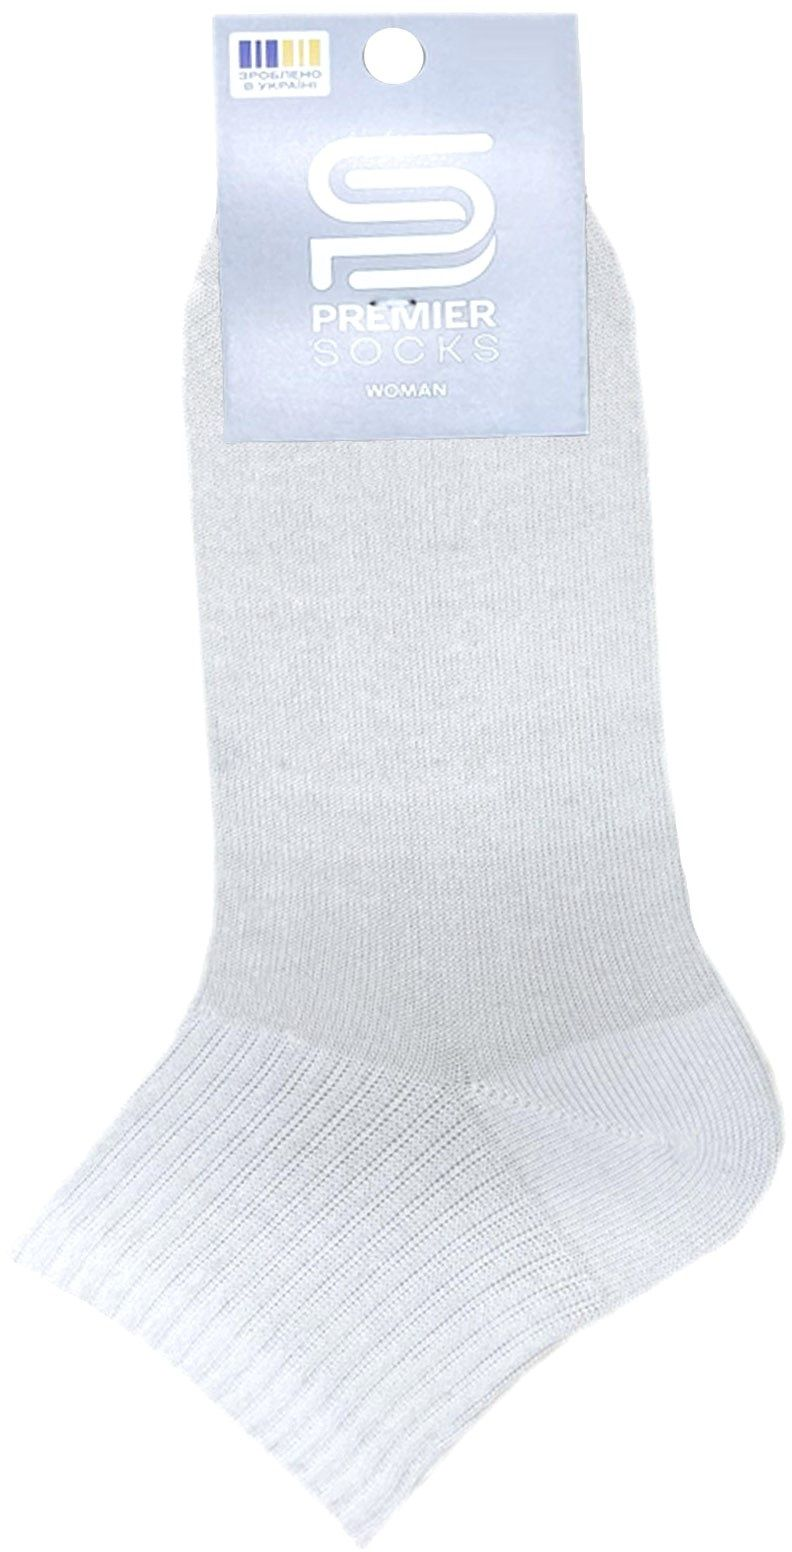 Шкарпетки жіночі Premier Socks 36-40 1 пара білі (4820163319094)фото2